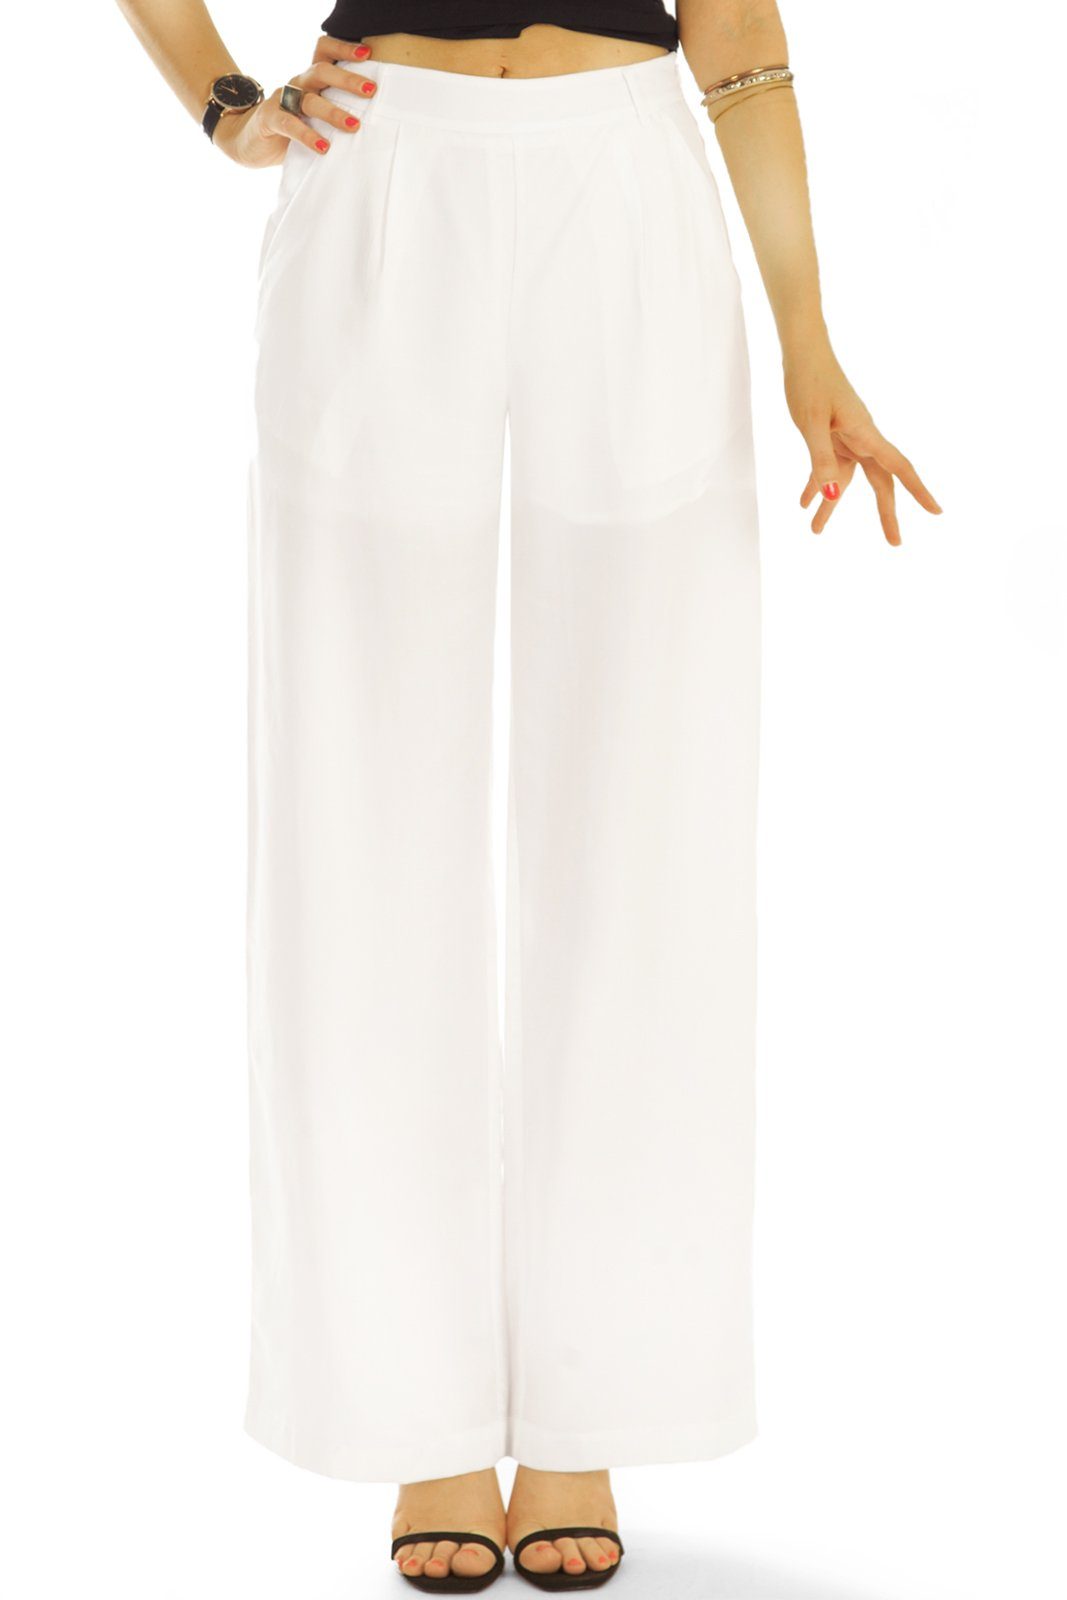 be styled Stoffhose Stoffhosen, weit geschnittene Bundfalten Hosen bequem - Damen - j43g-2 in Unifarben weiß